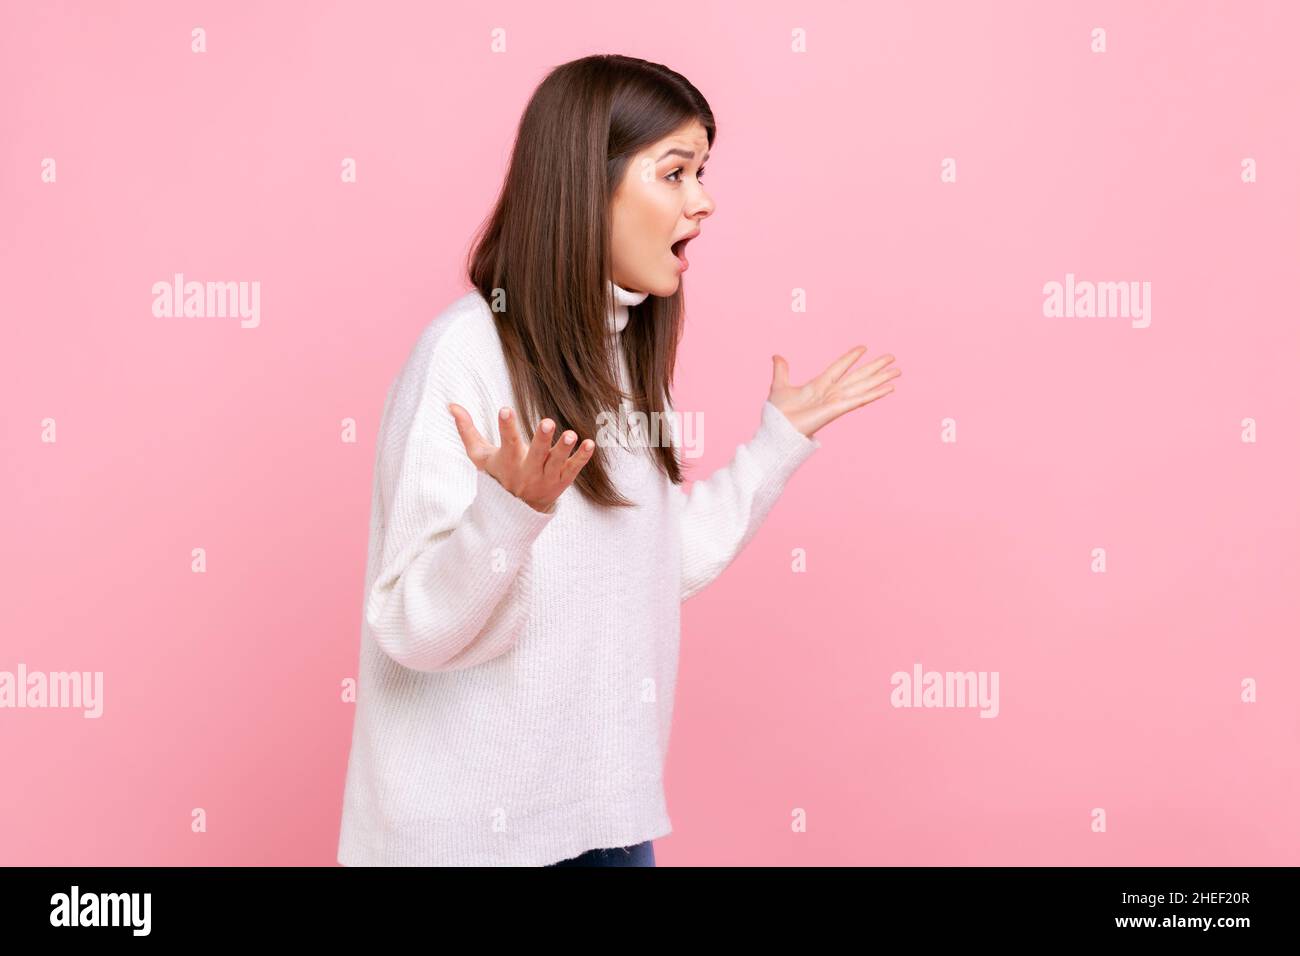 Seitenansicht Porträt eines jungen Mädchens, das in wütender Geste die Hände hält, vor Wut und Wut schreit und einen weißen Pullover im lässigen Stil trägt. Innenaufnahme des Studios isoliert auf rosa Hintergrund. Stockfoto